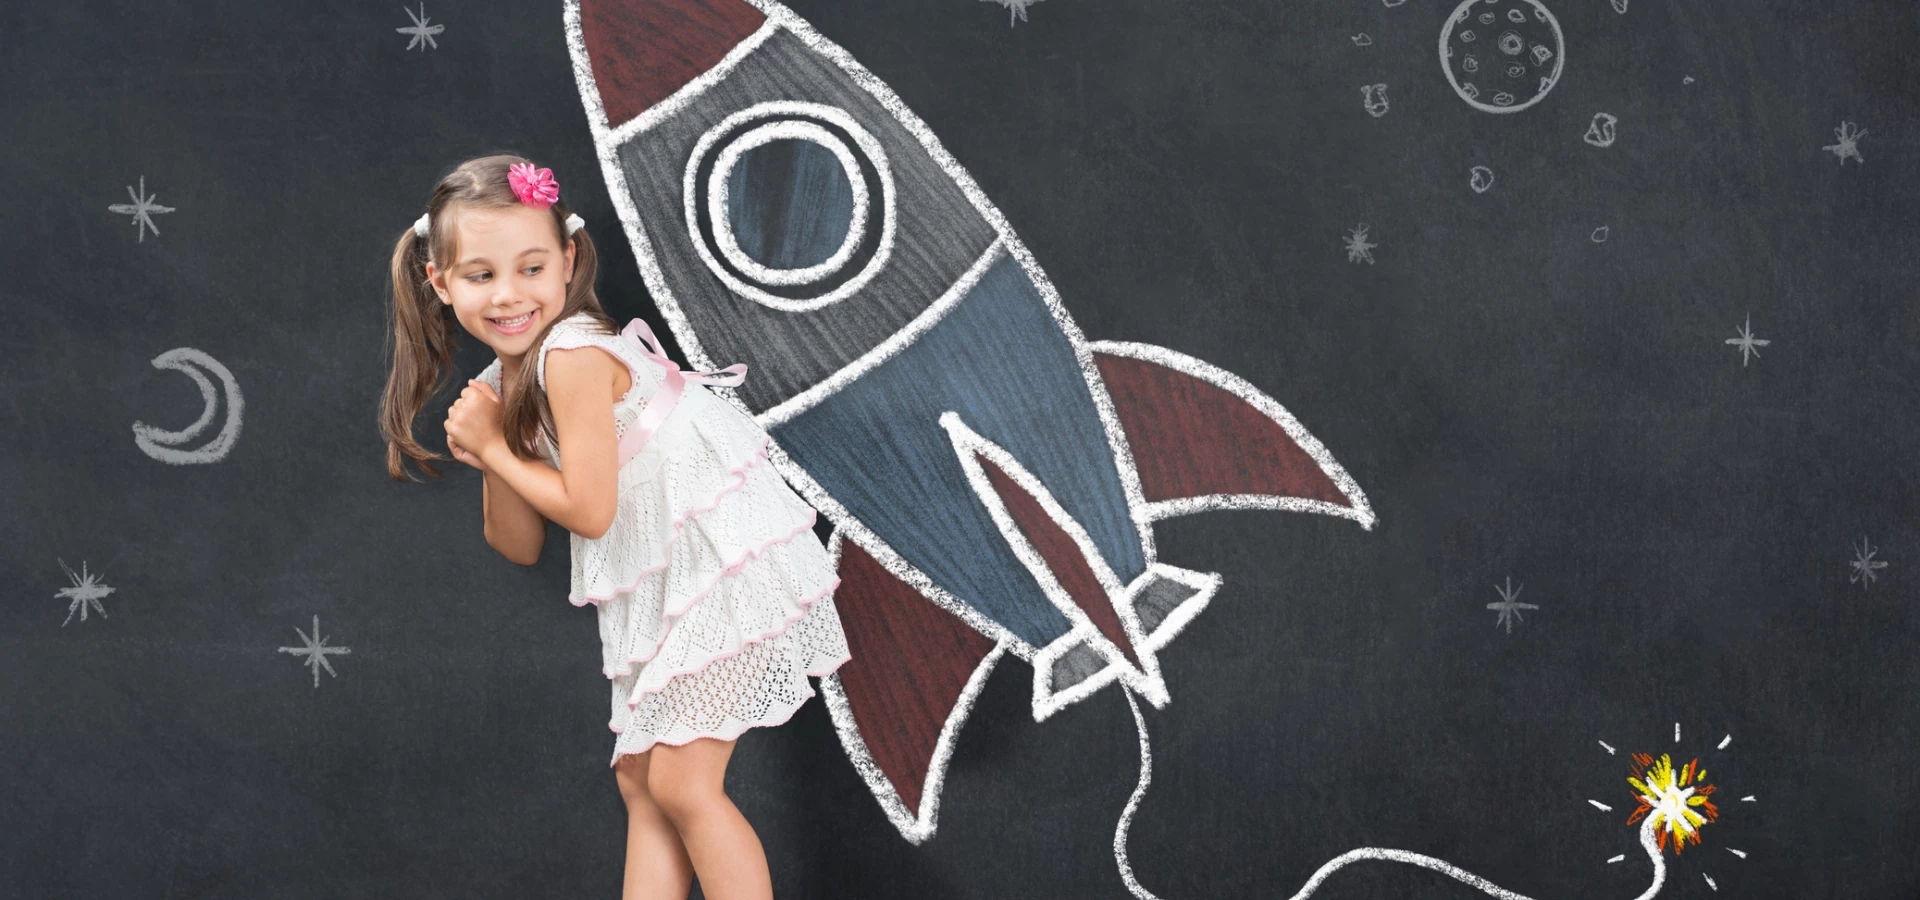 Dziewczynka stojąca przy rakiecie narysowanej na tablicy szkolnej